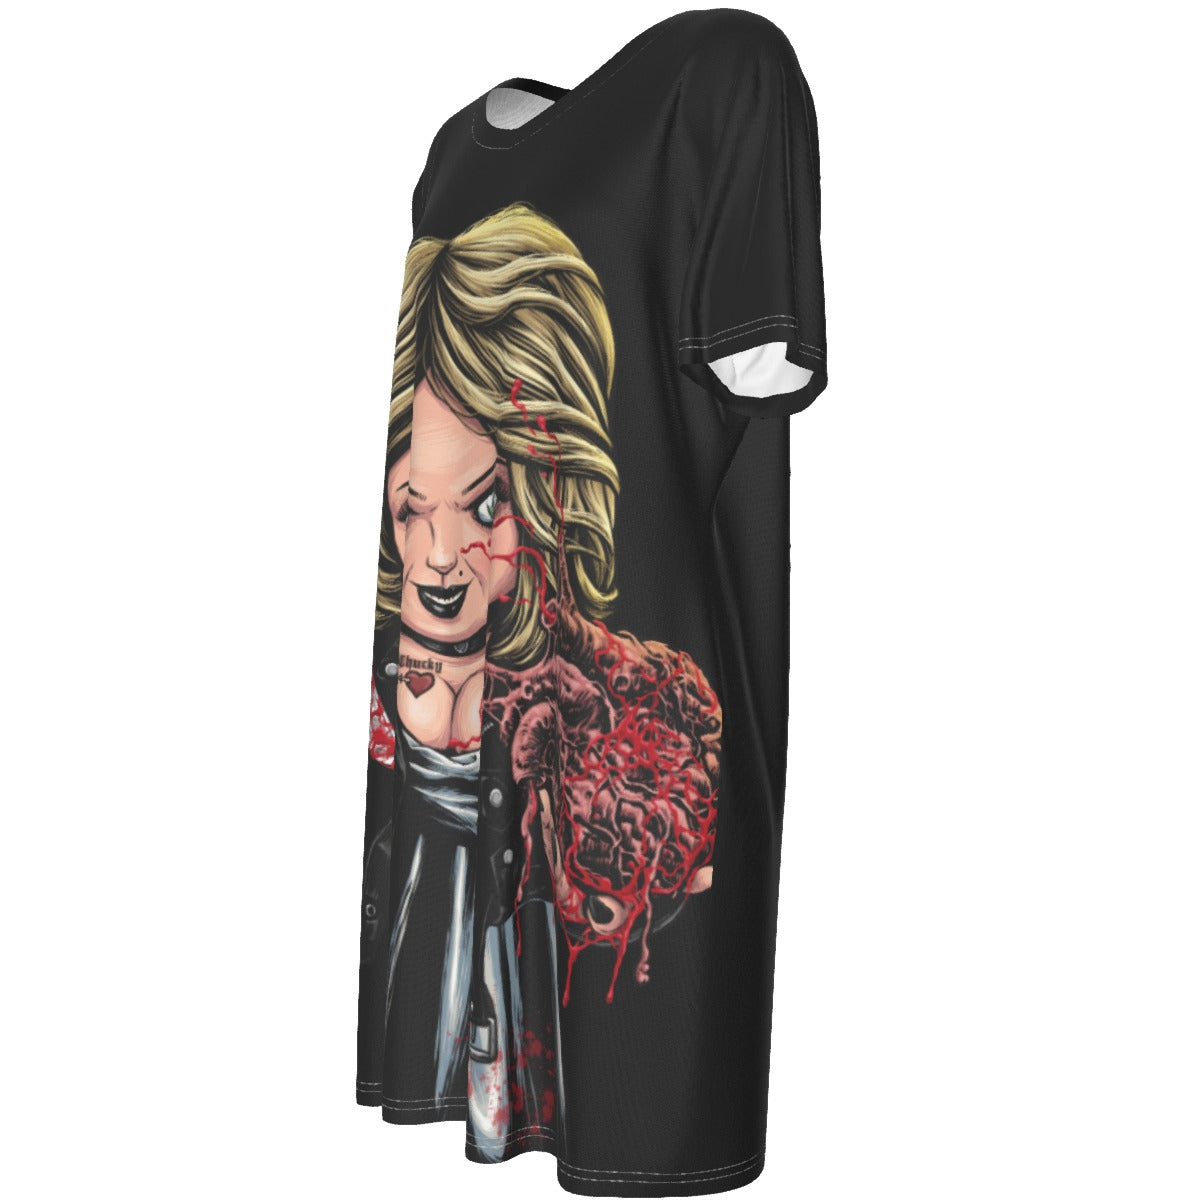 All-Over Print Women's Short Sleeve Waist Dress spookydoll